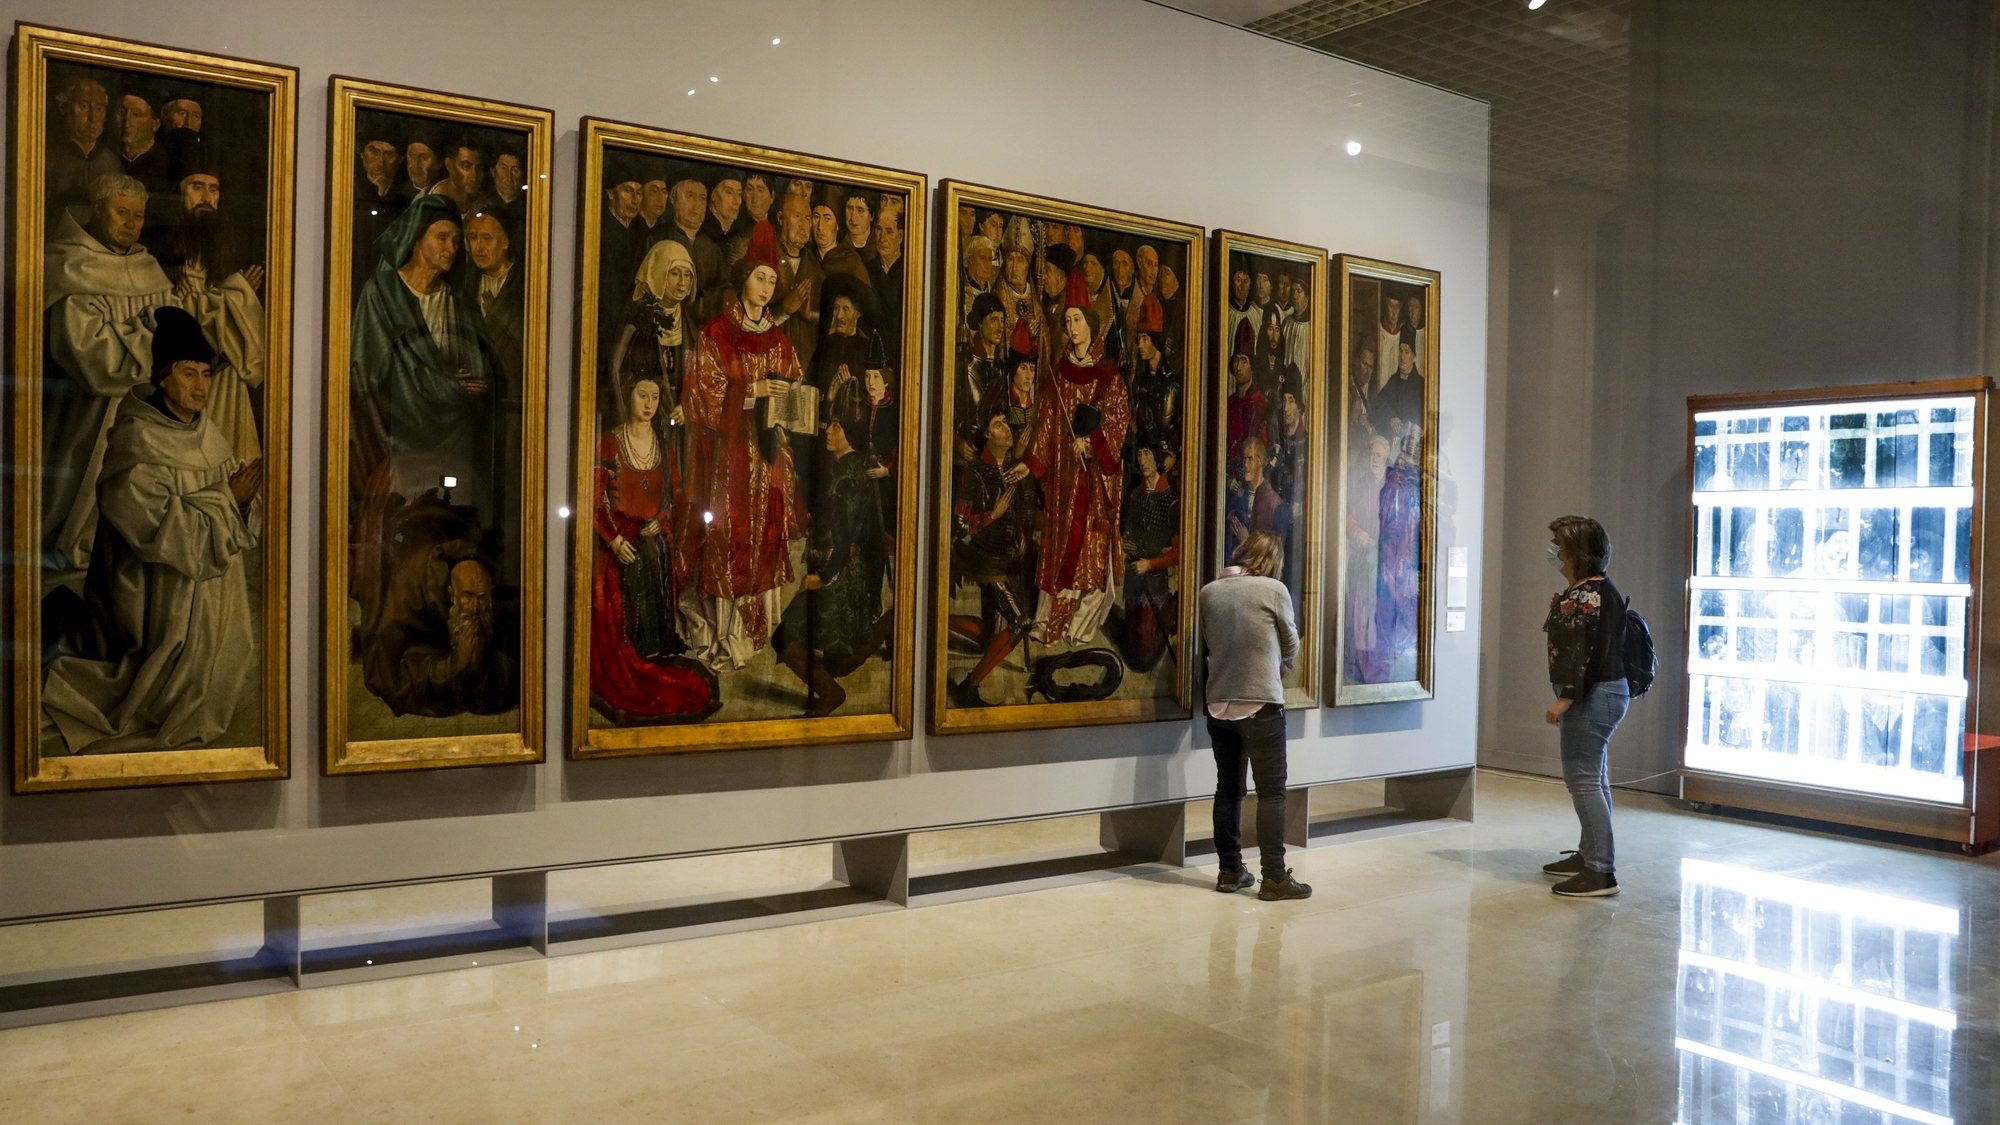 Técnicos de restauro observam o espaço de restauro dos &quot;Painéis de São Vicente&quot; no Museu Nacional de Arte Antiga, no Dia Internacional dos Museus em Lisboa, 18 de maio de 2020. TIAGO PETINGA/LUSA